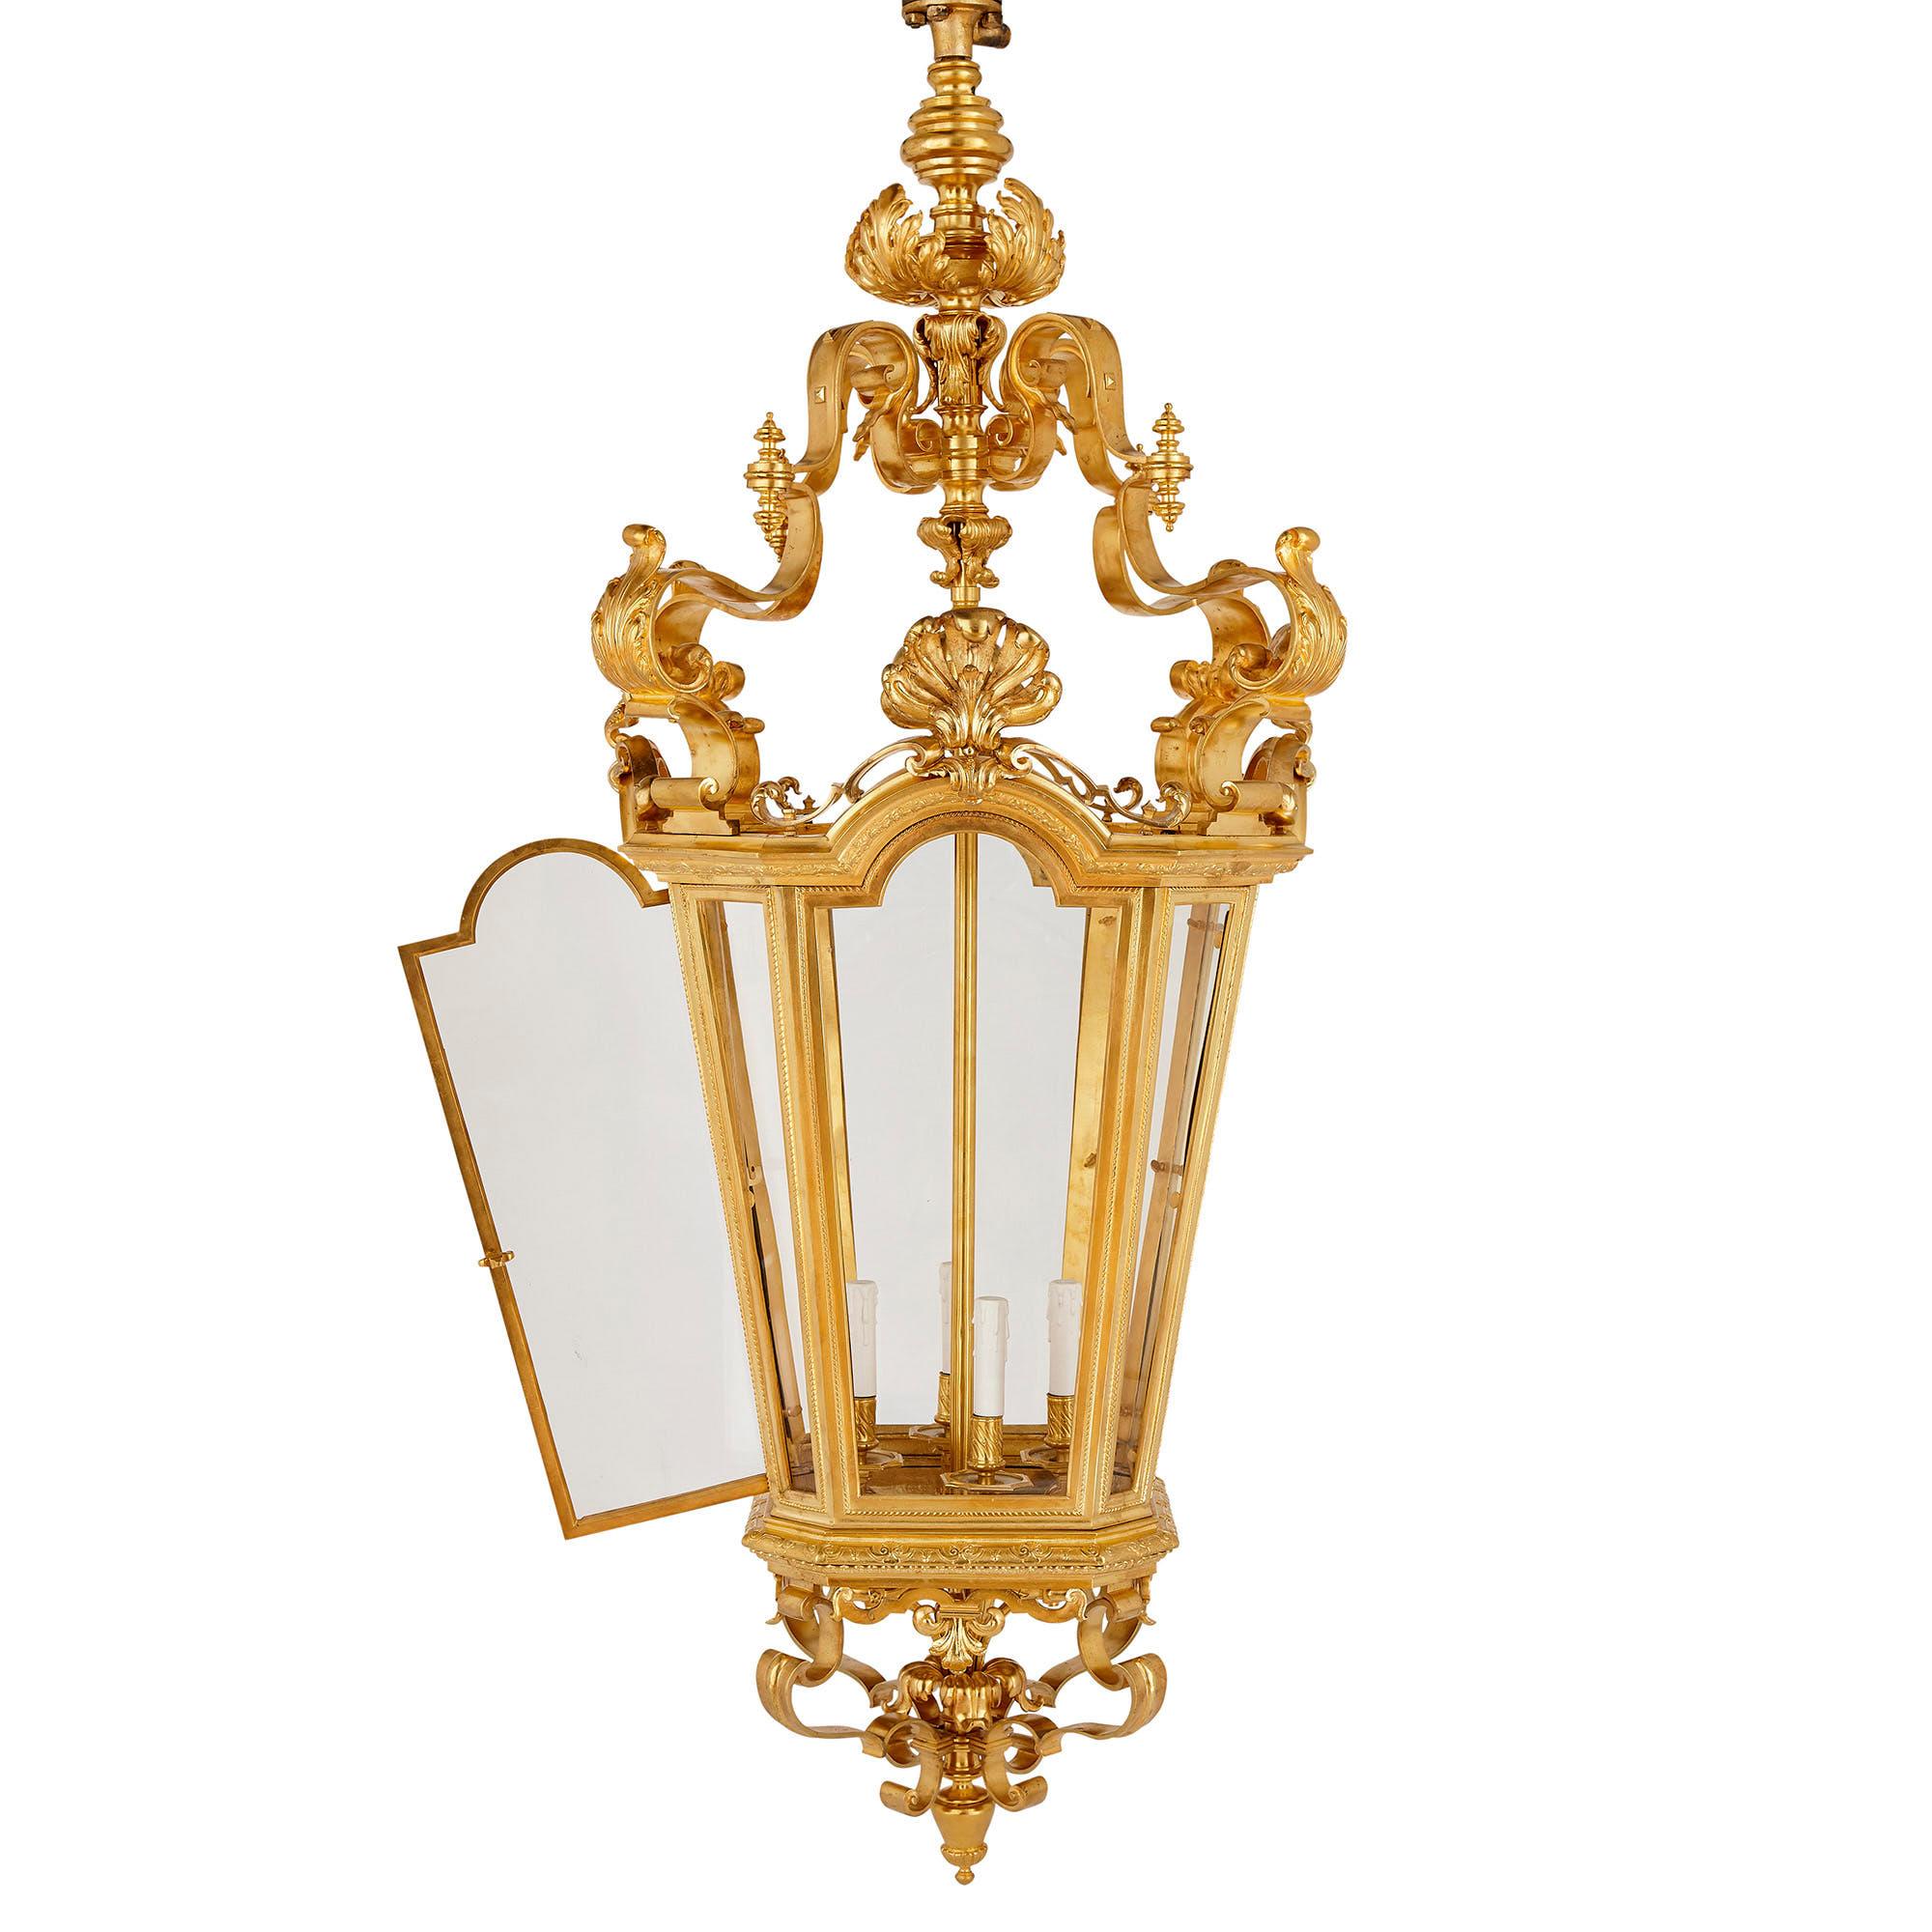 Très grande lanterne d'époque Napoléon III en bronze doré de style Rococo
Français, fin du XIXe siècle
Mesures : Hauteur 176 cm, largeur 80 cm, profondeur 80 cm

Cette lanterne exceptionnelle a été produite sous le règne de Napoléon III, une